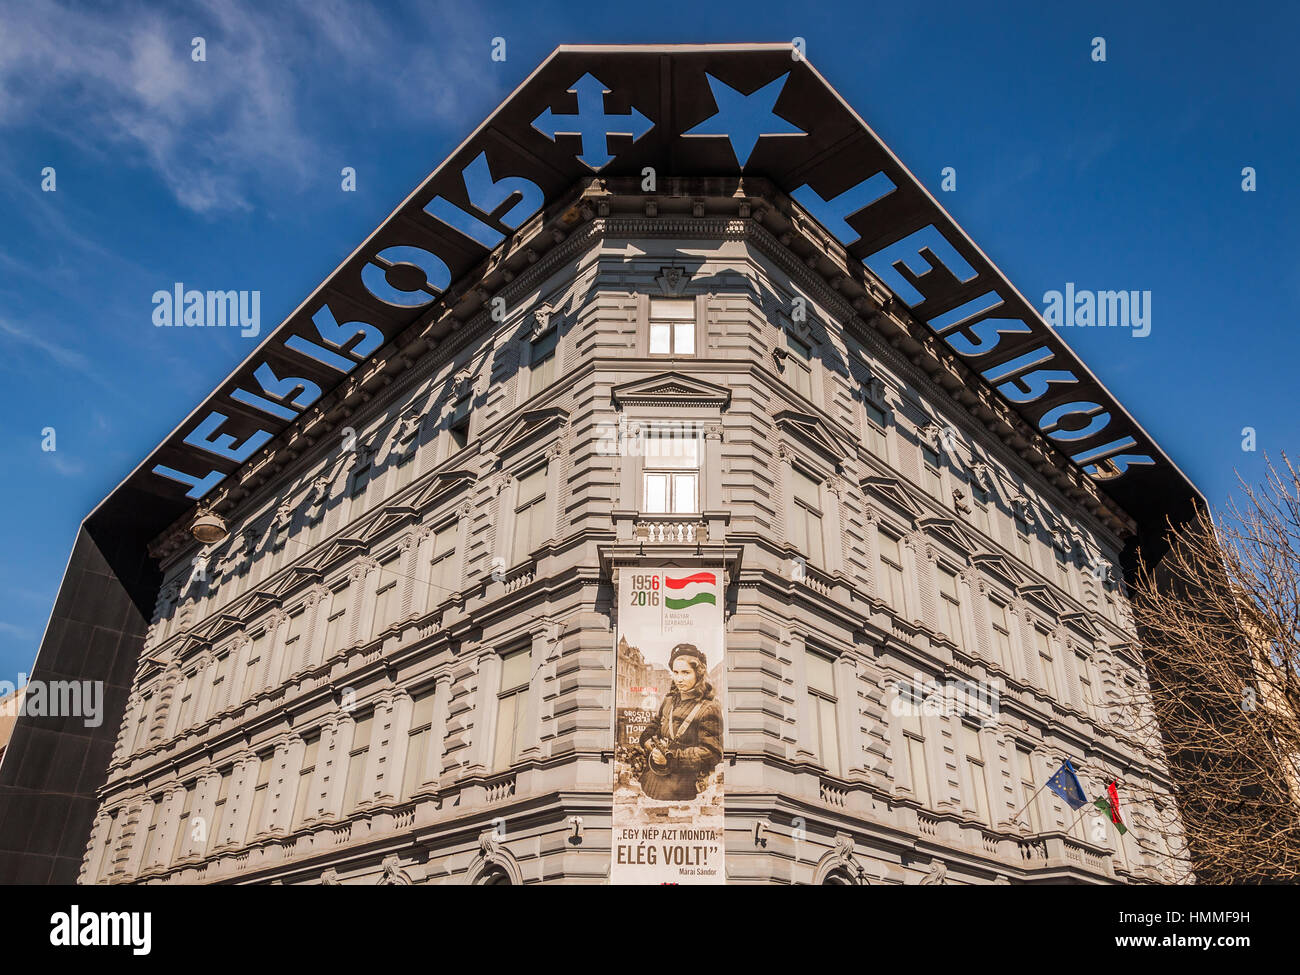 BUDAPEST, Ungarn - 22. Februar 2016: Haus des Terrors oder Terror Haza ist ein Museum in Budapest, Ungarn. Stockfoto